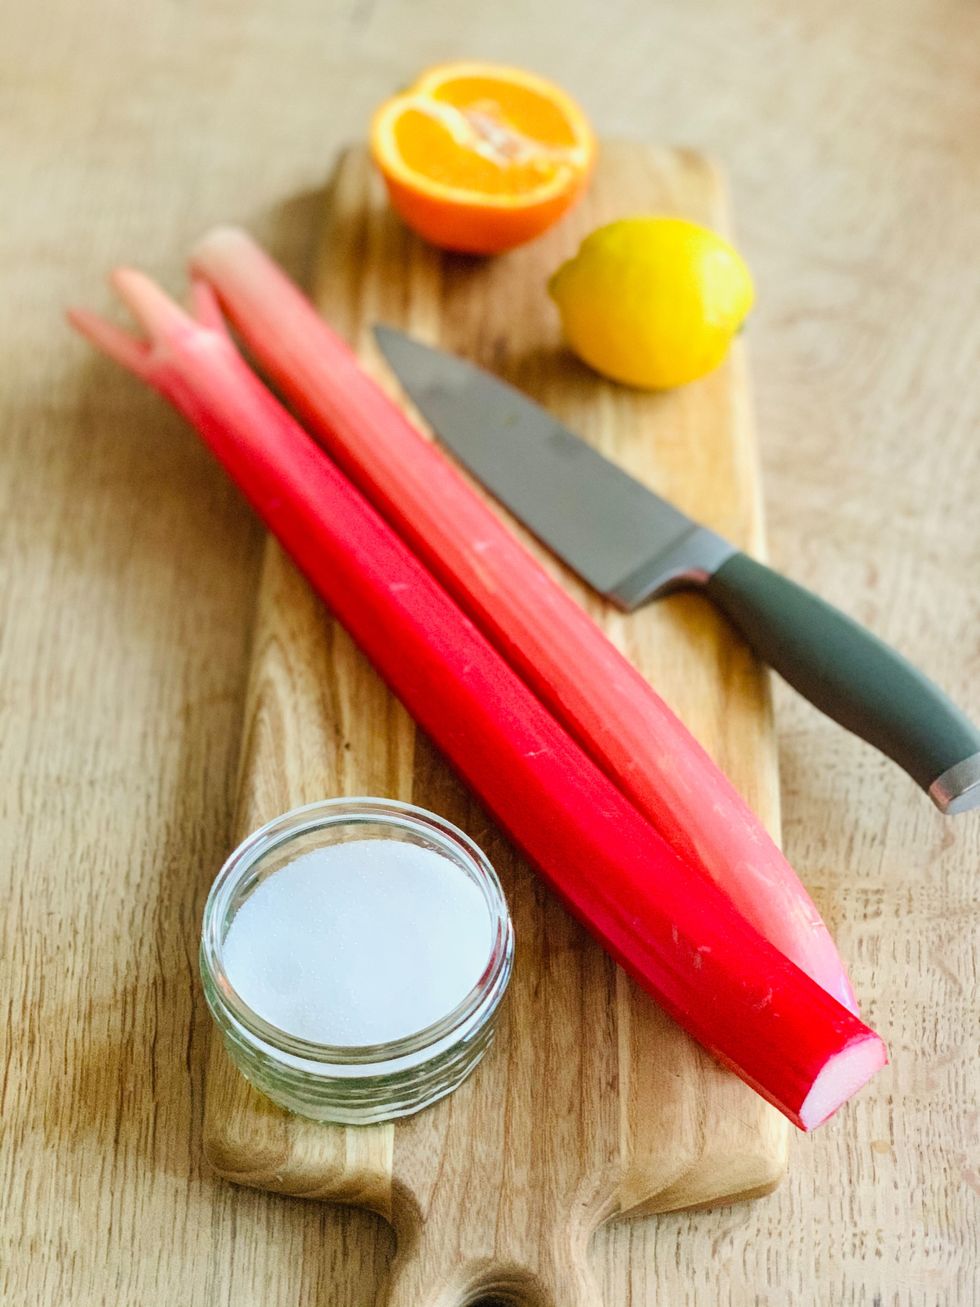 rhubarb stem on a cutting board with white sugar